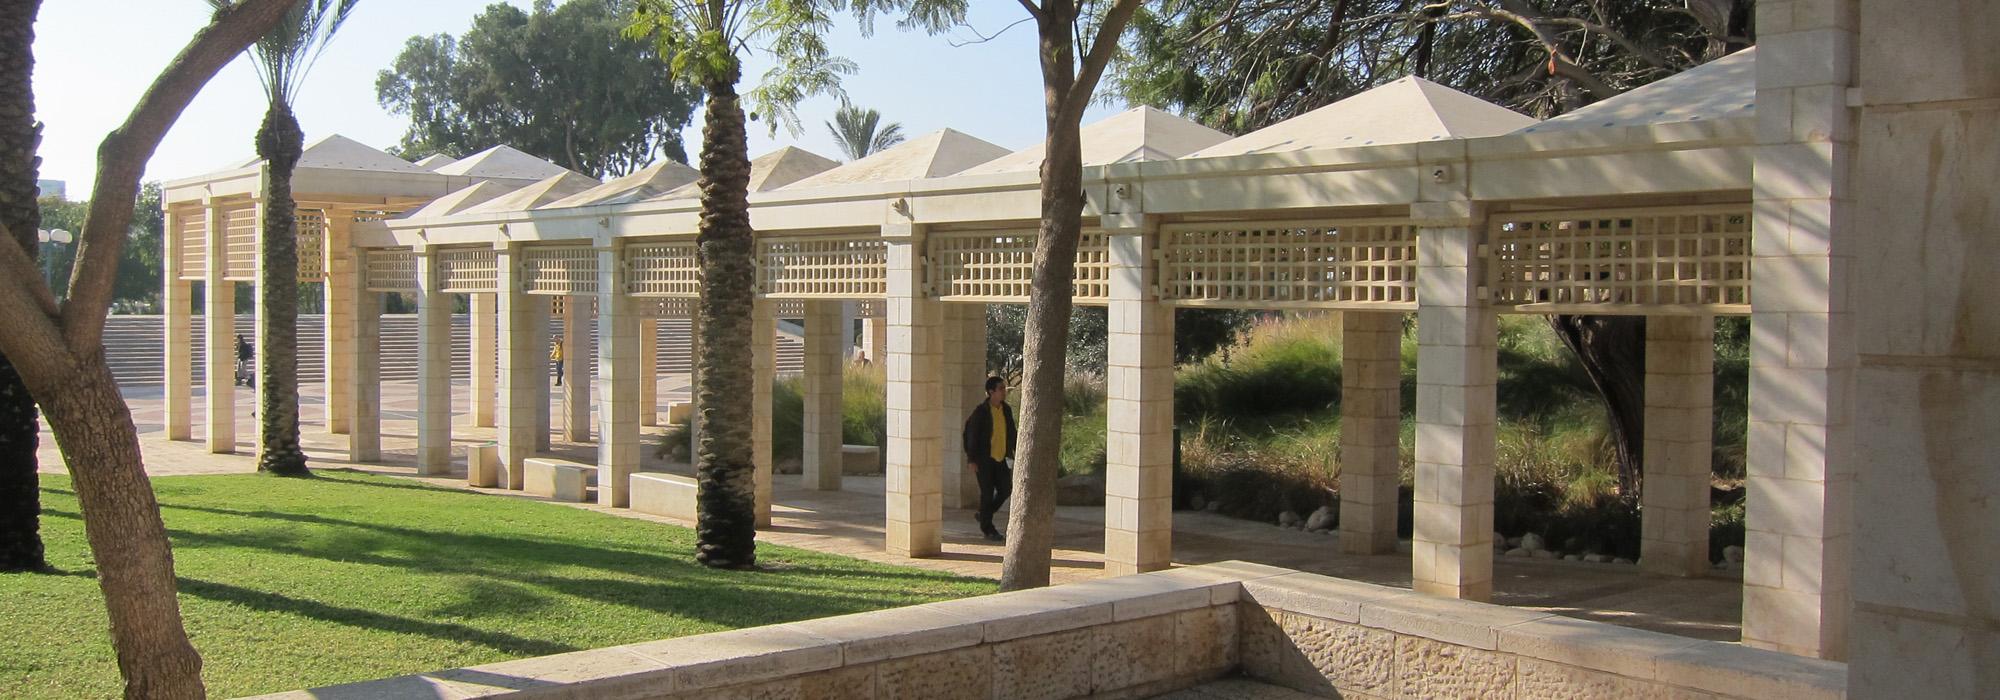 Kreitman Plaza, Be'er Sheva, Israel